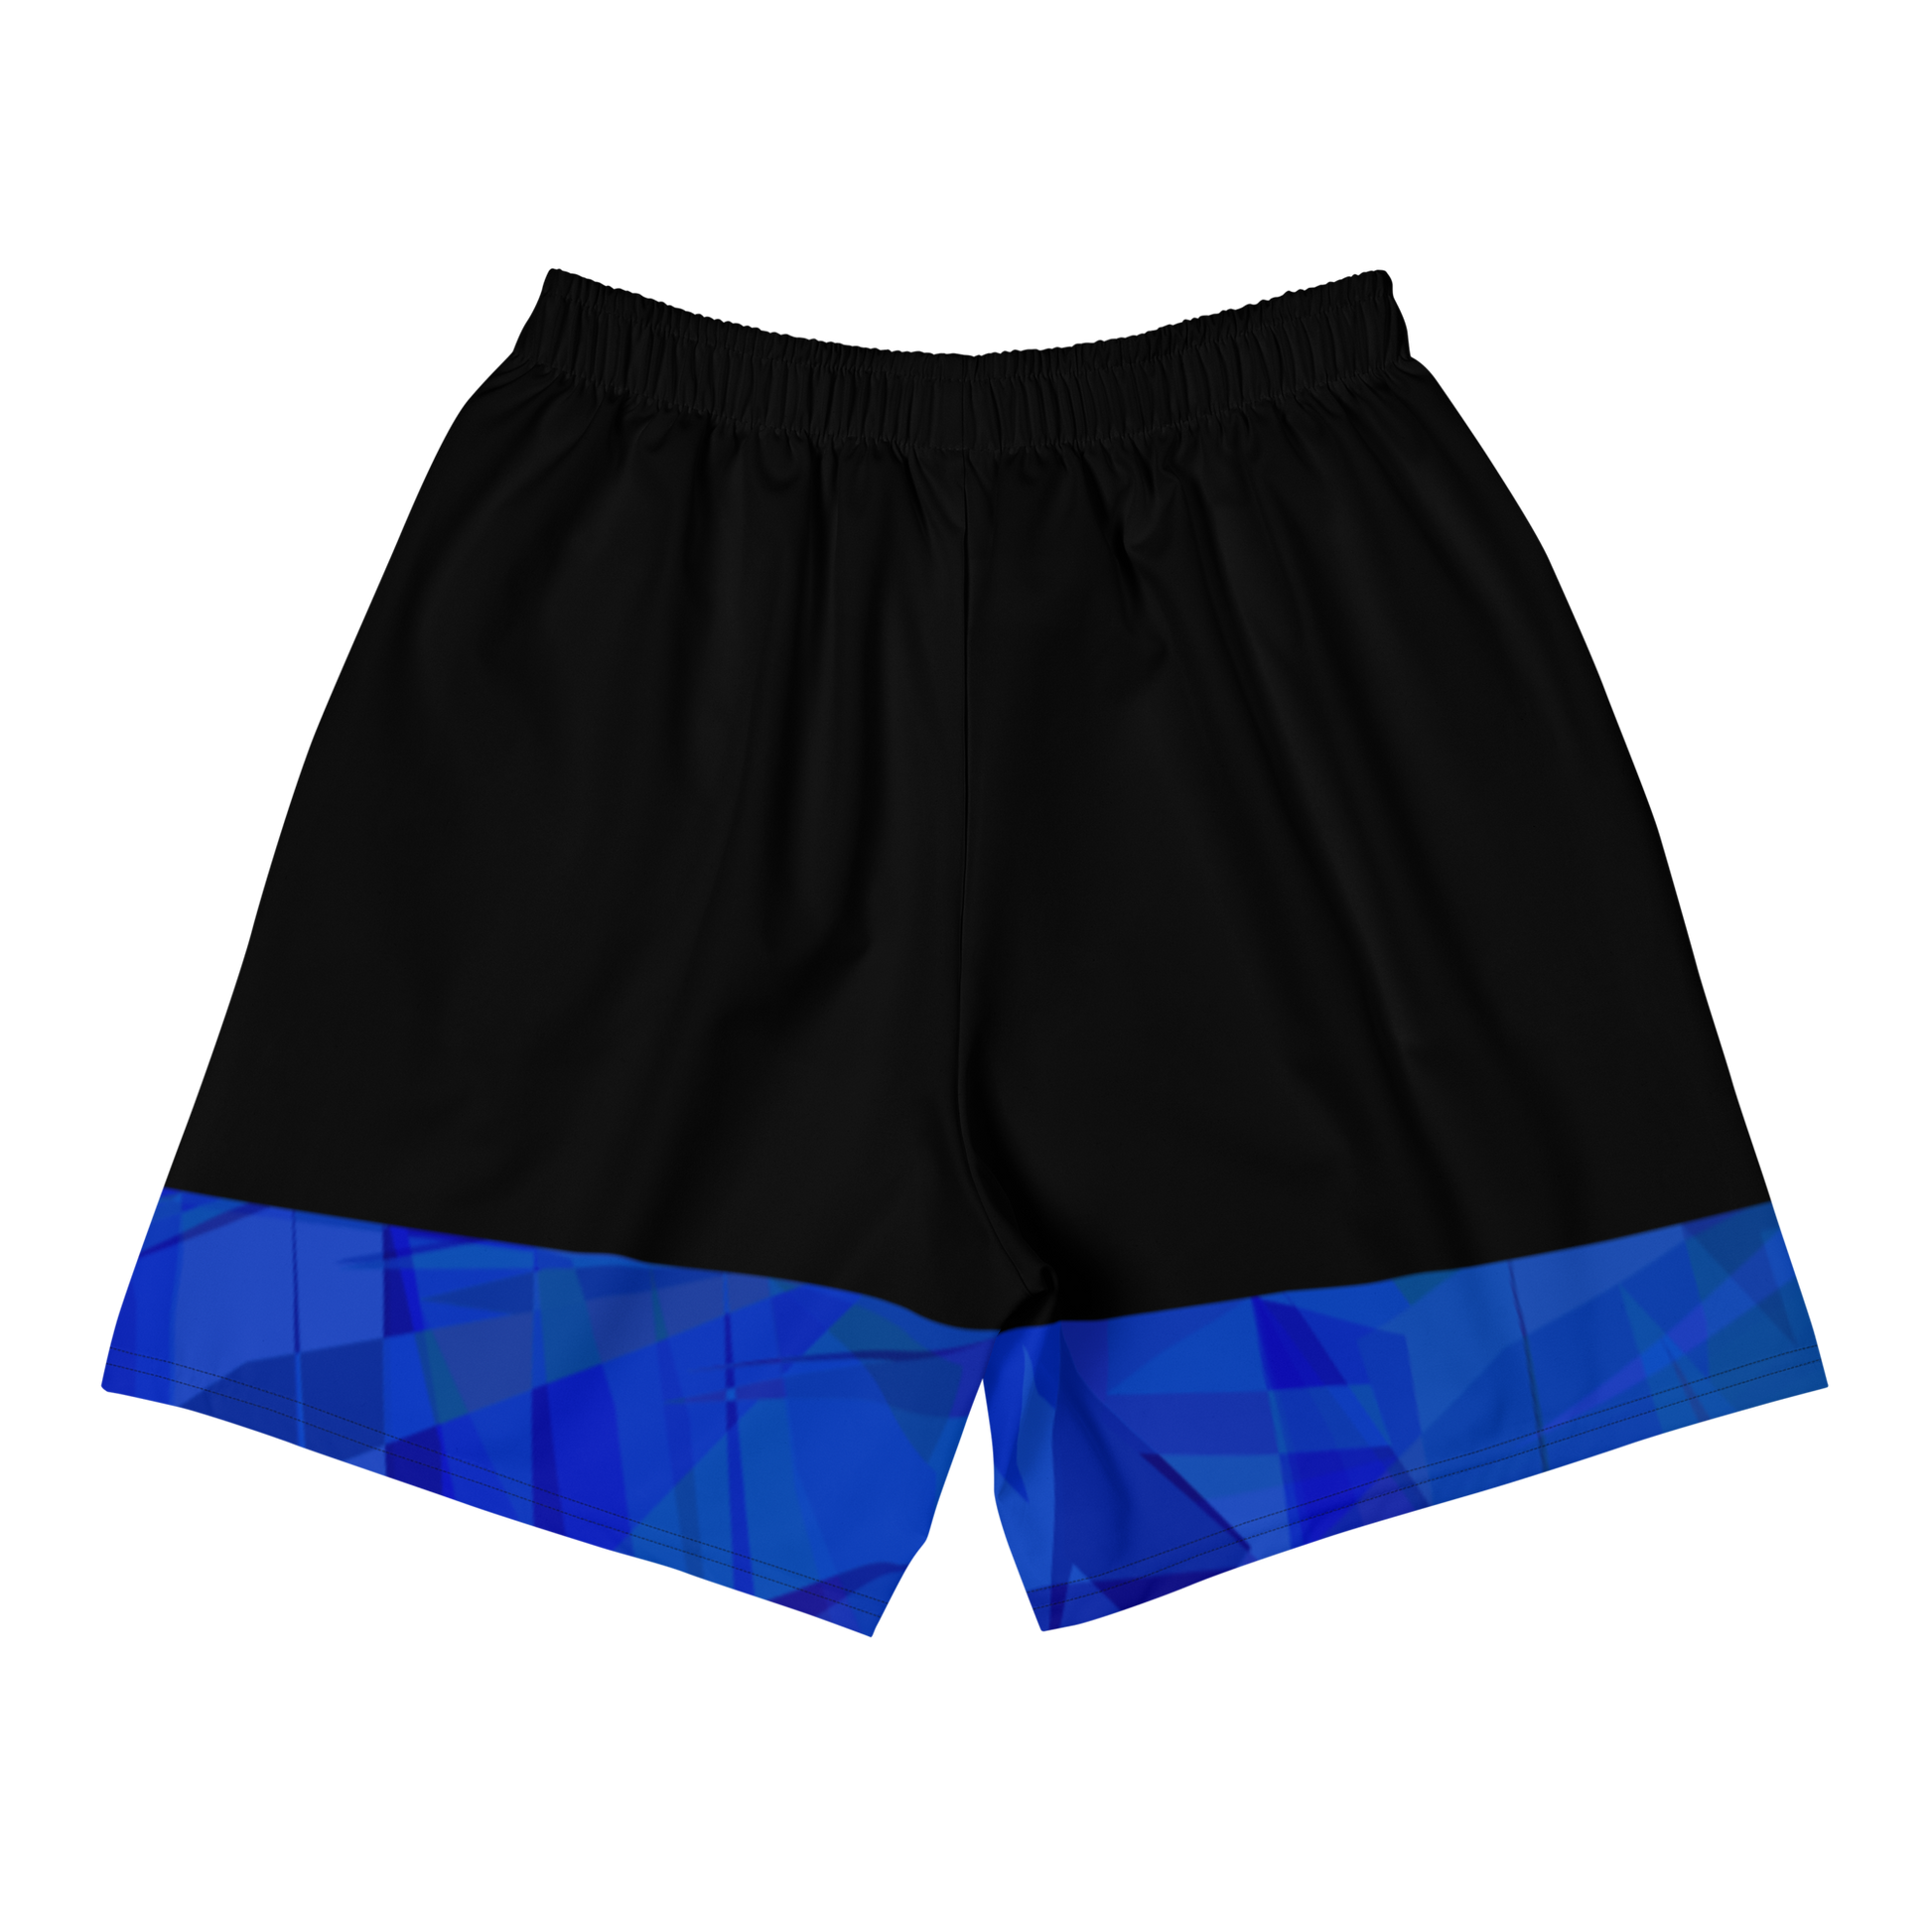 Sqdltd Starburst BLUB Men's Athletic Shorts